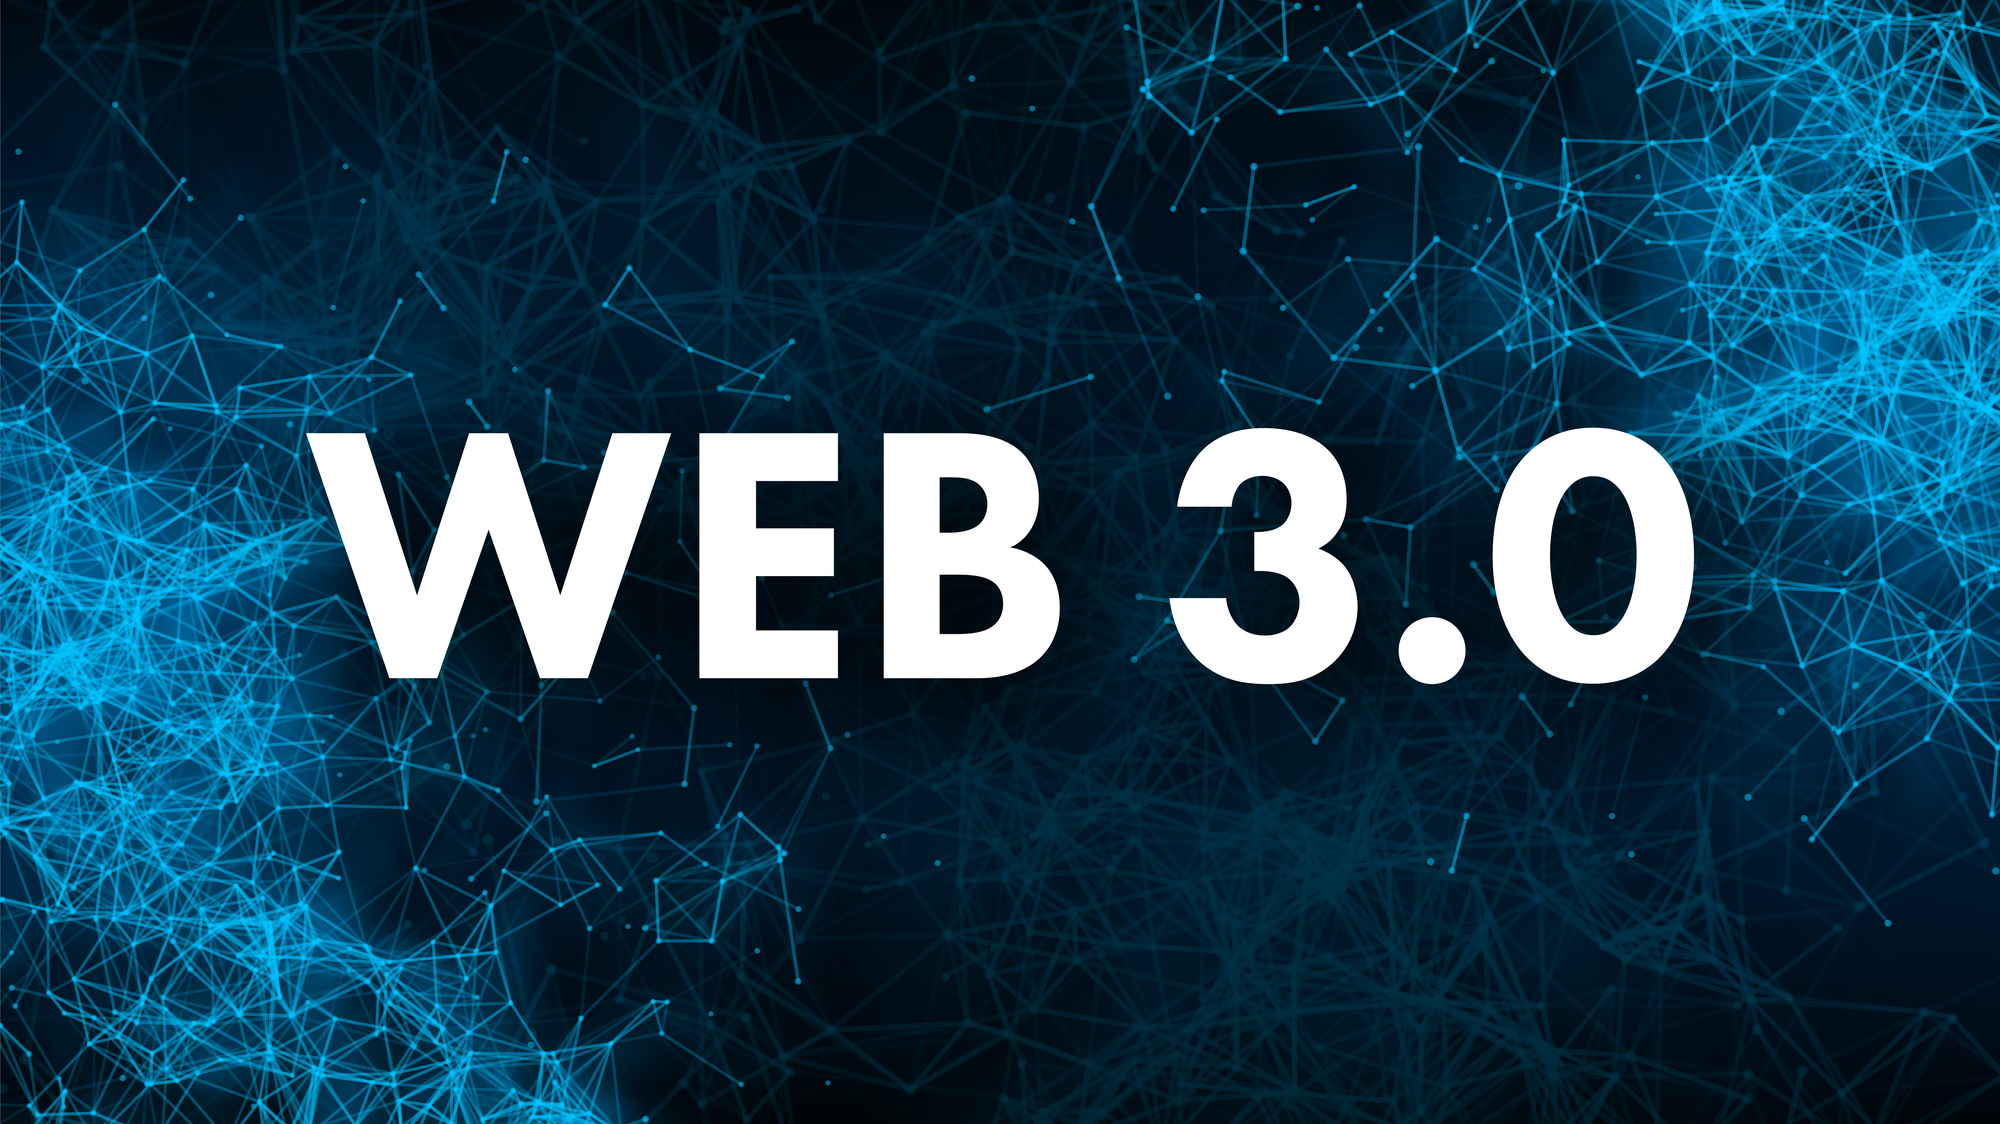 UniverseWeb3-стартап IYK привлек $16,8 млн. в последнем раунде финансирования под руководством A16z